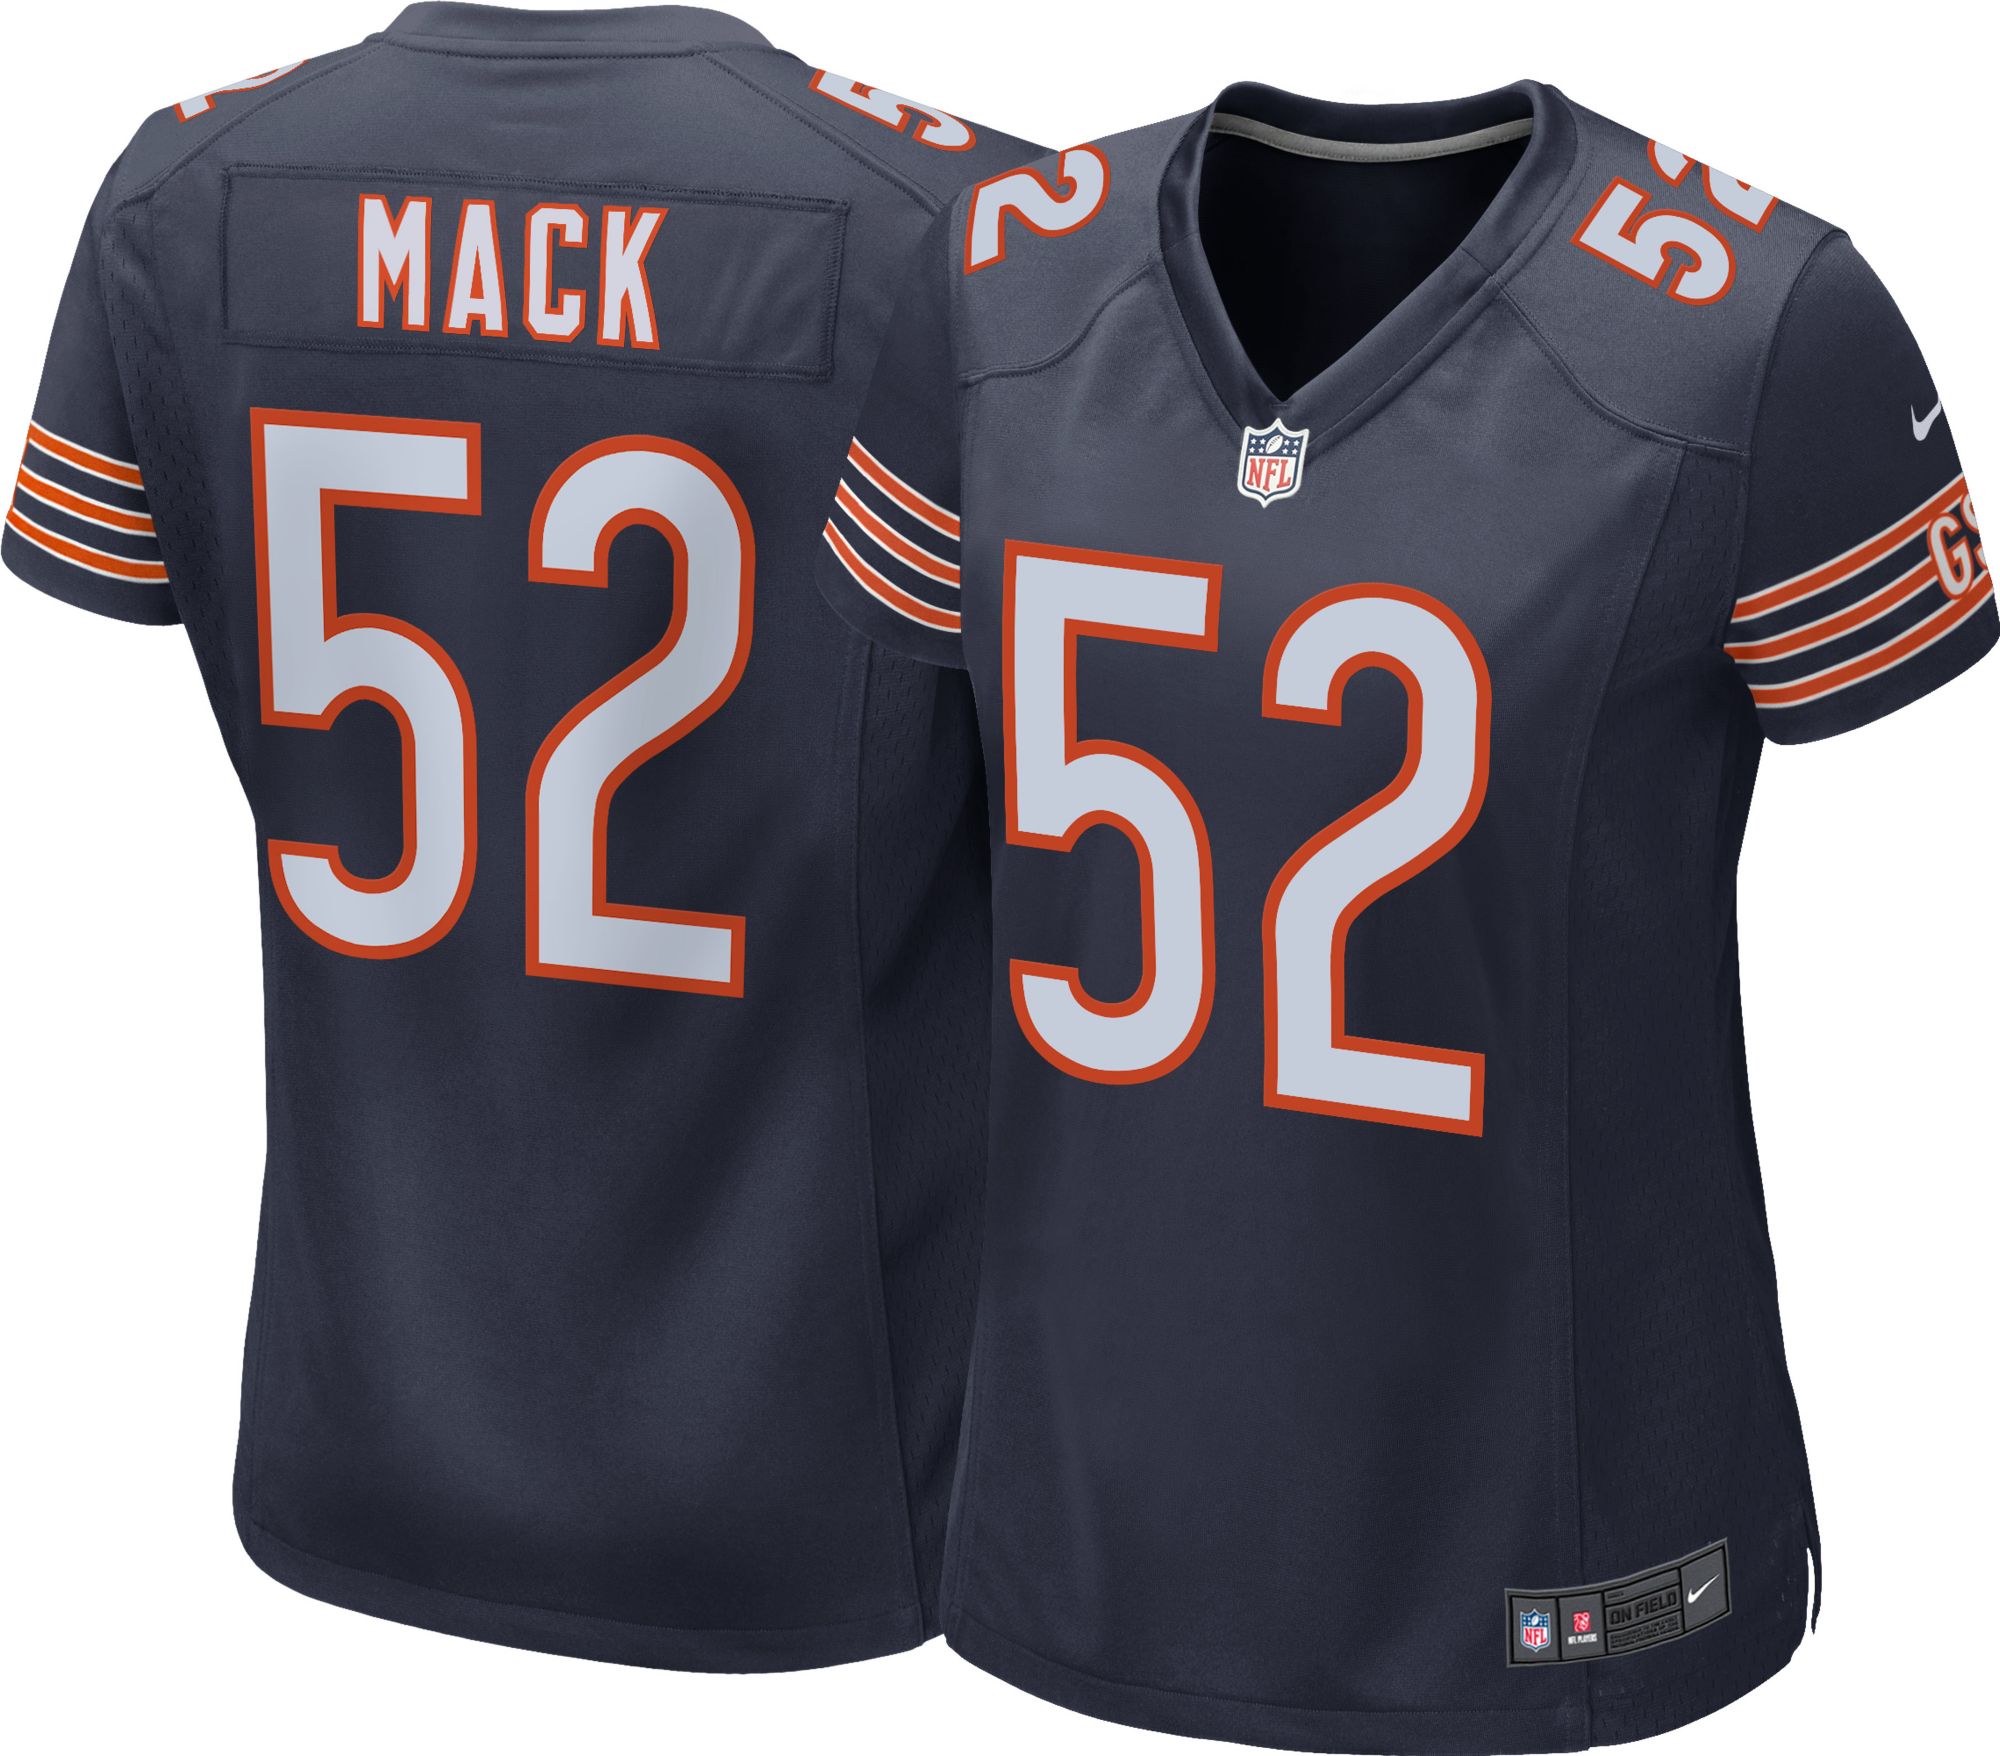 mack jersey bears